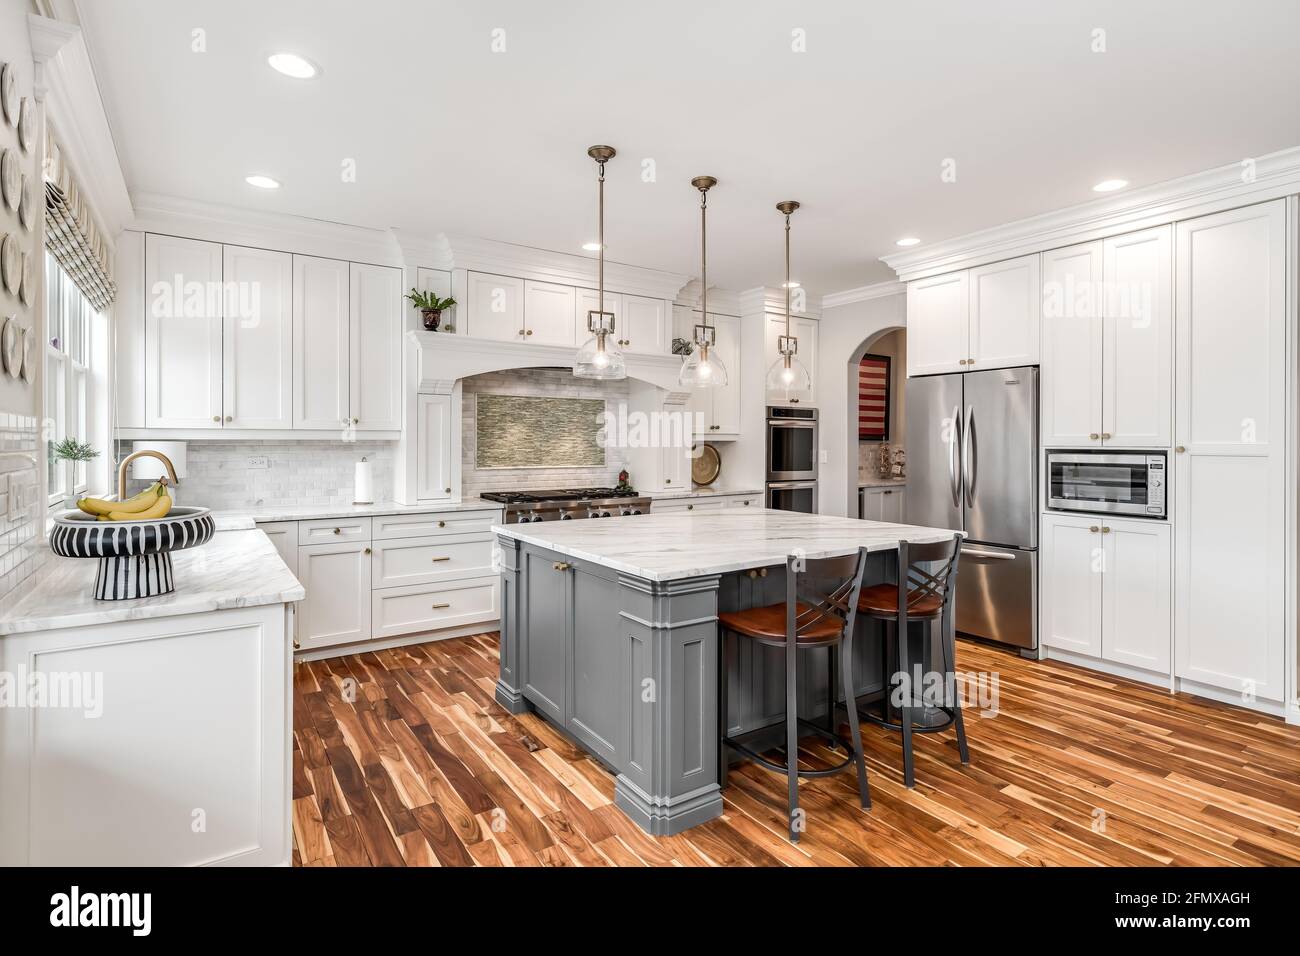 Eine luxuriöse, weiße Küche mit einer Granitplatte und einem gefliesten Backsplash hinter dem Edelstahl KitchenAid Herd. Stockfoto